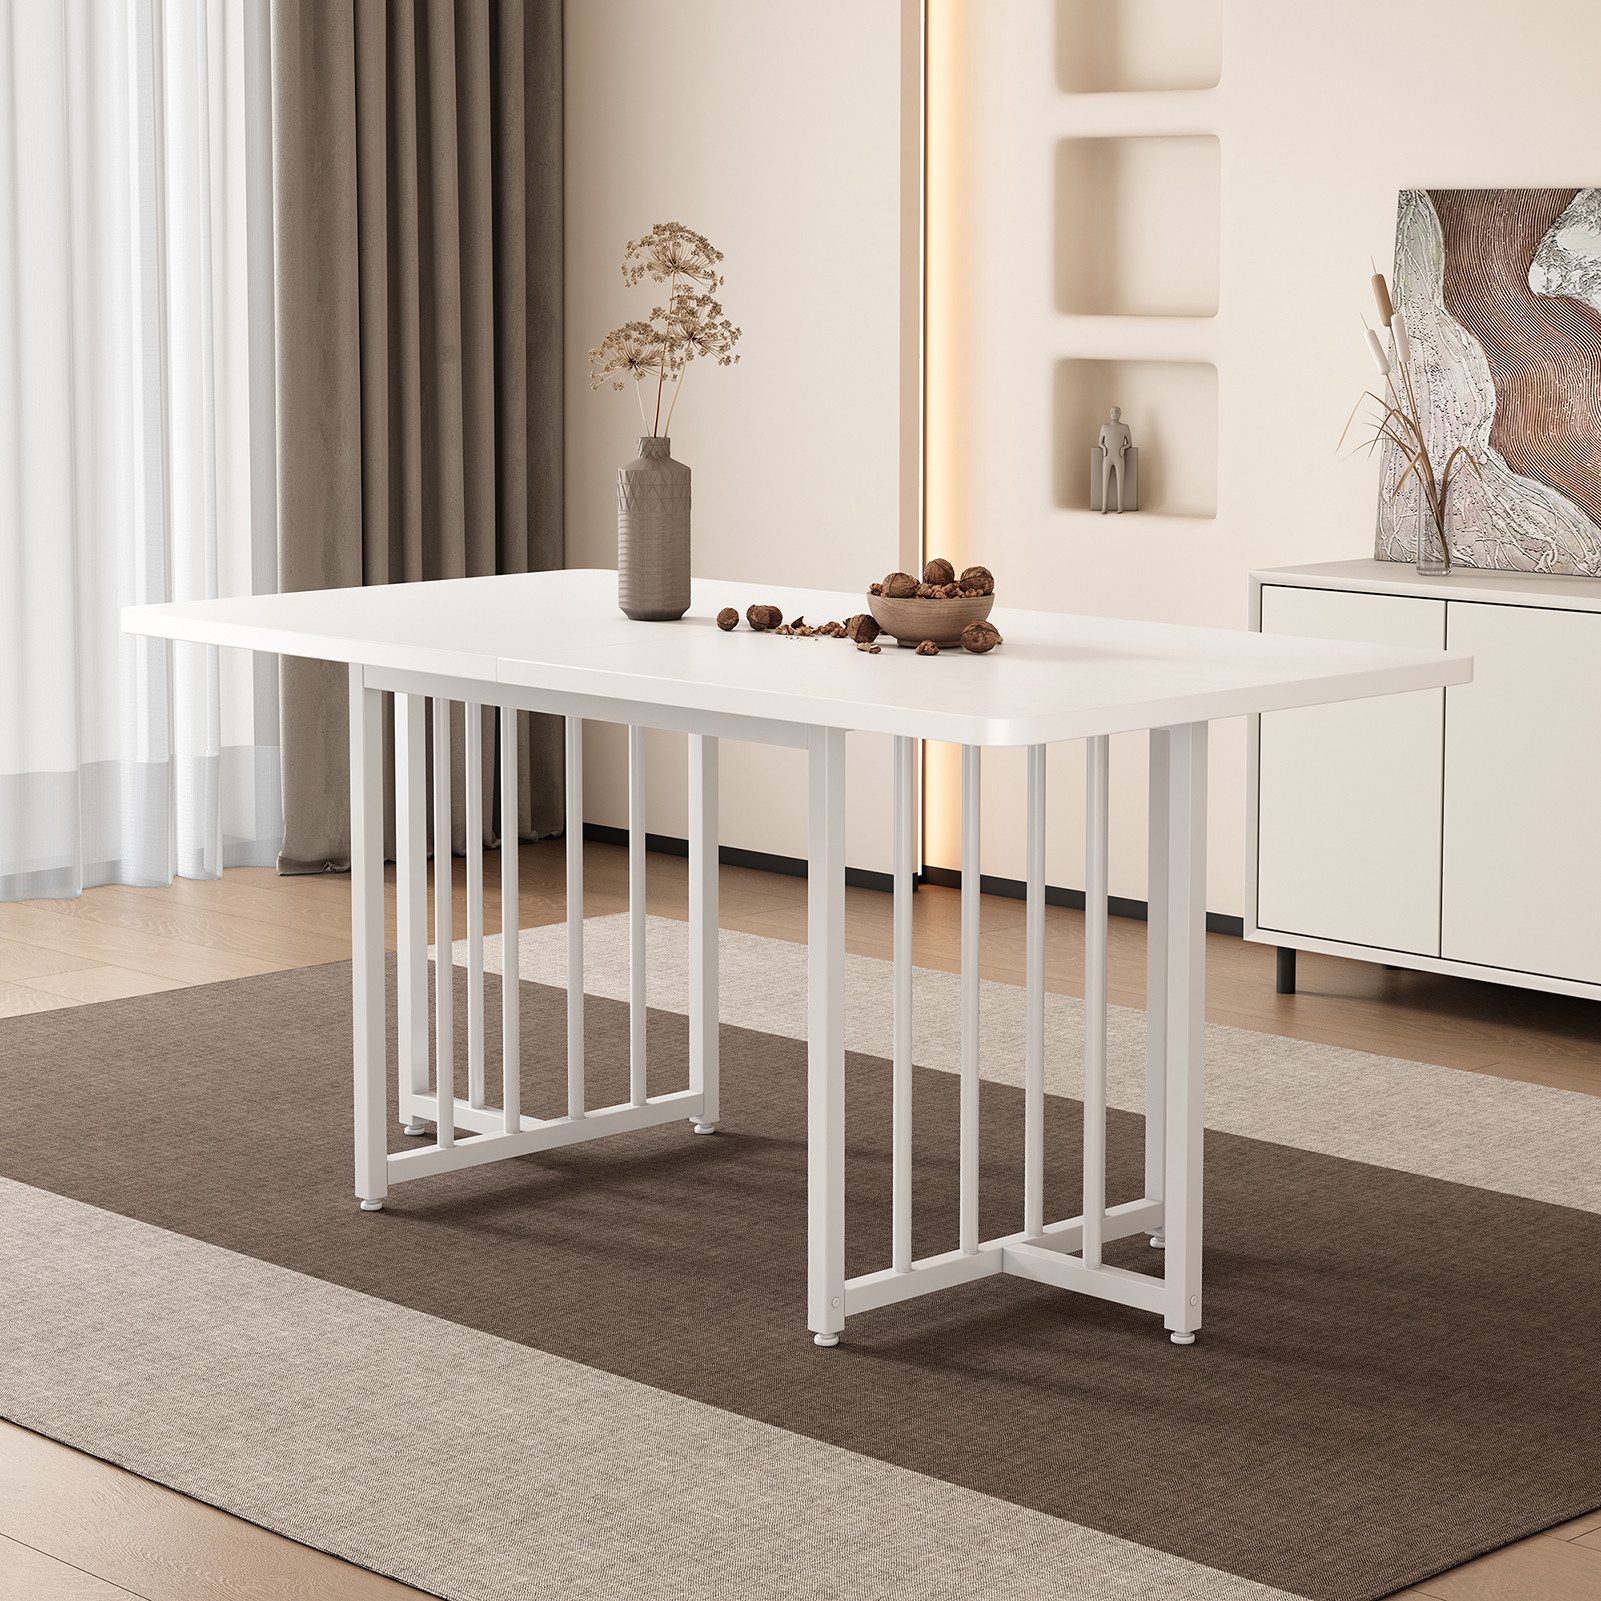 Rutaqian Esstisch Esstisch modern, Holztisch, Dining Table 158 x 76 x 75 cm,weiß (Rechteckiger hölzerner Küchentisch, einfach zu installieren), für Küche Wohnzimmer